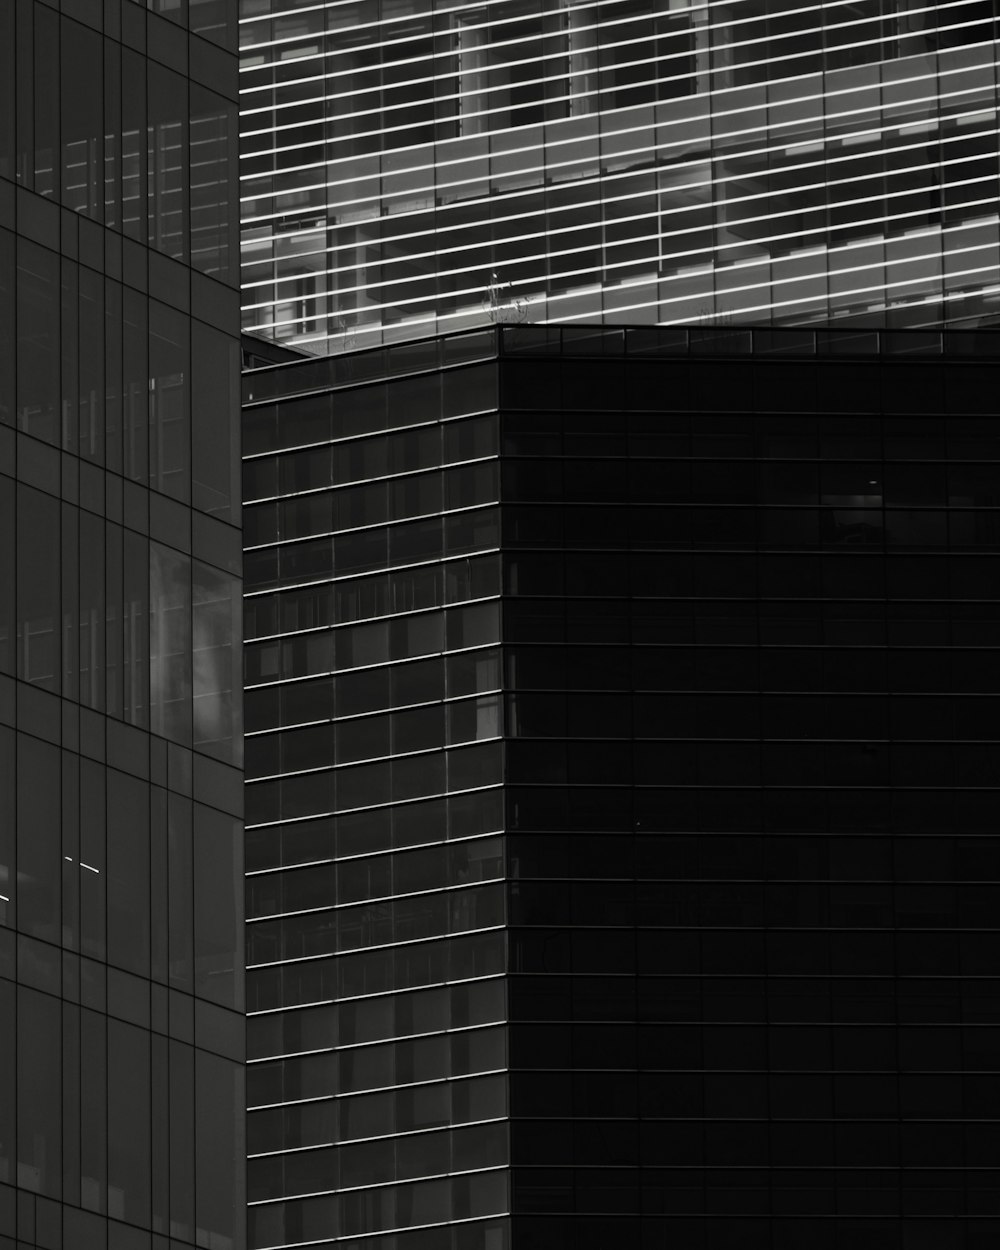 a black and white photo of a skyscraper